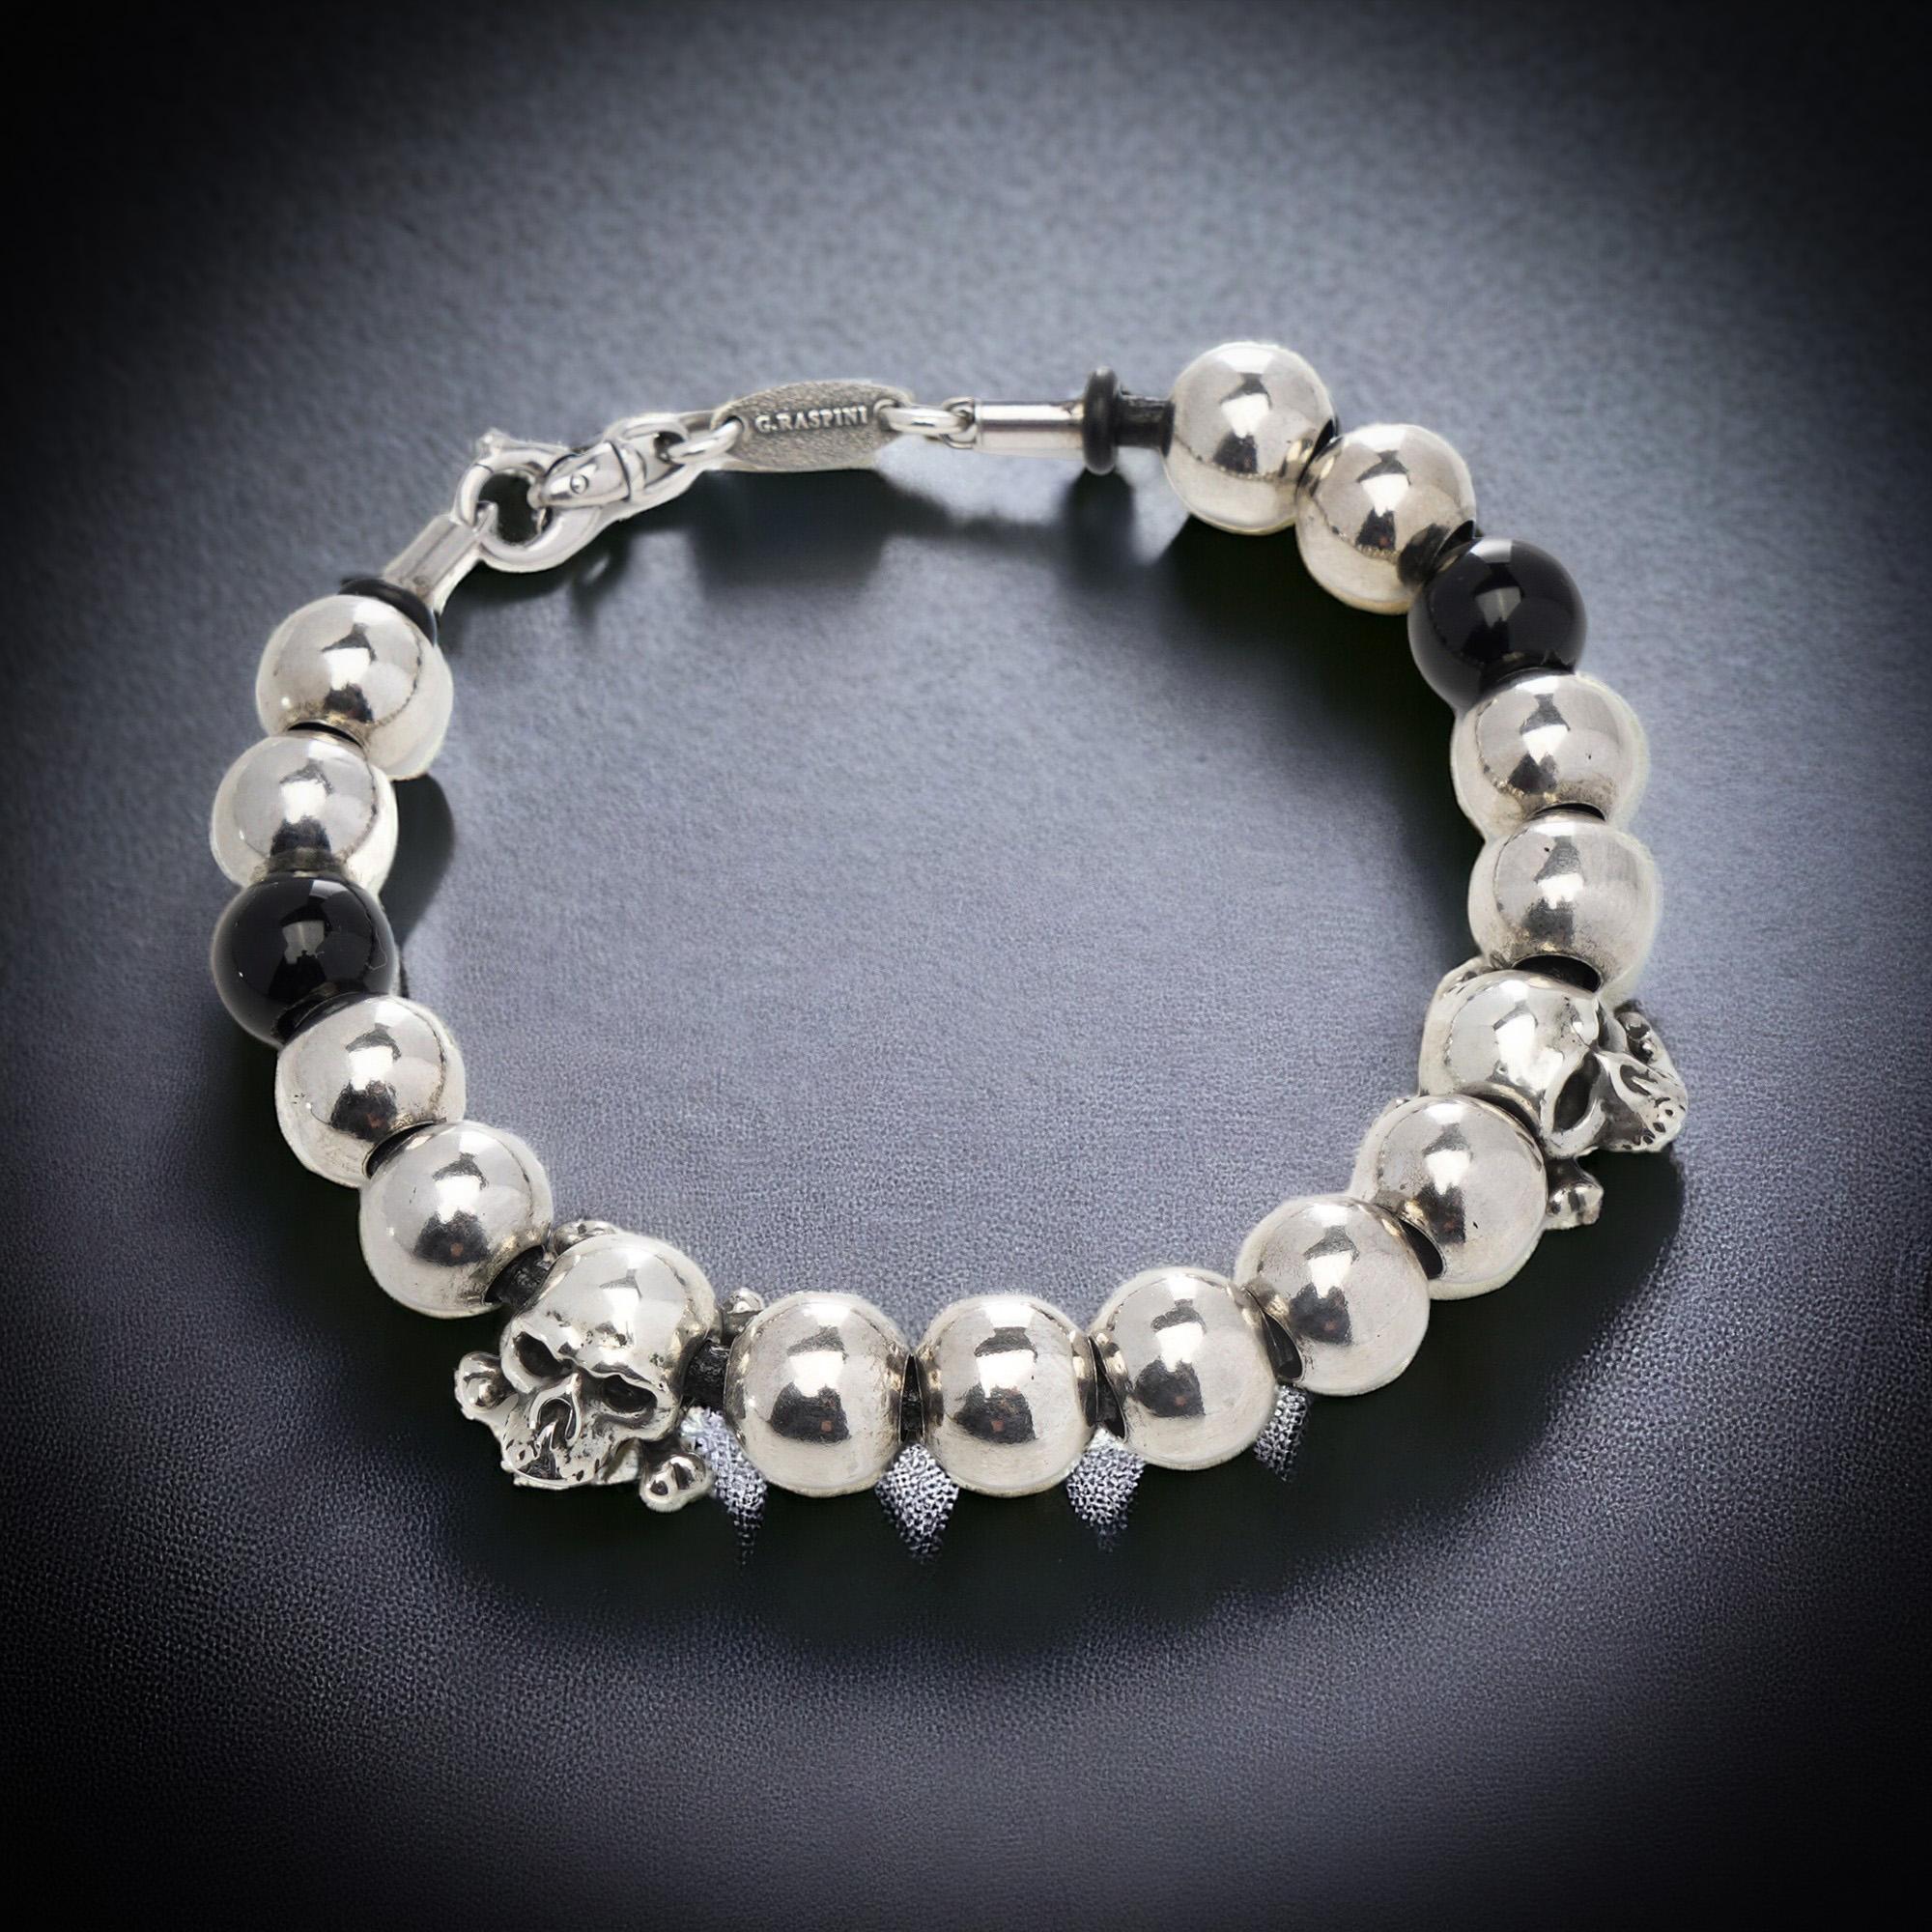 Bracelet de perles en argent 925 de Giovani Raspini avec des accents de crâne et deux perles d'onyx.
Fabriqué en Italie, Circa 1990's
Poinçon d'argent 925, poinçons italiens et marque Giovani Raspini.

Dimensions :
Longueur x largeur x 22 x 1,7